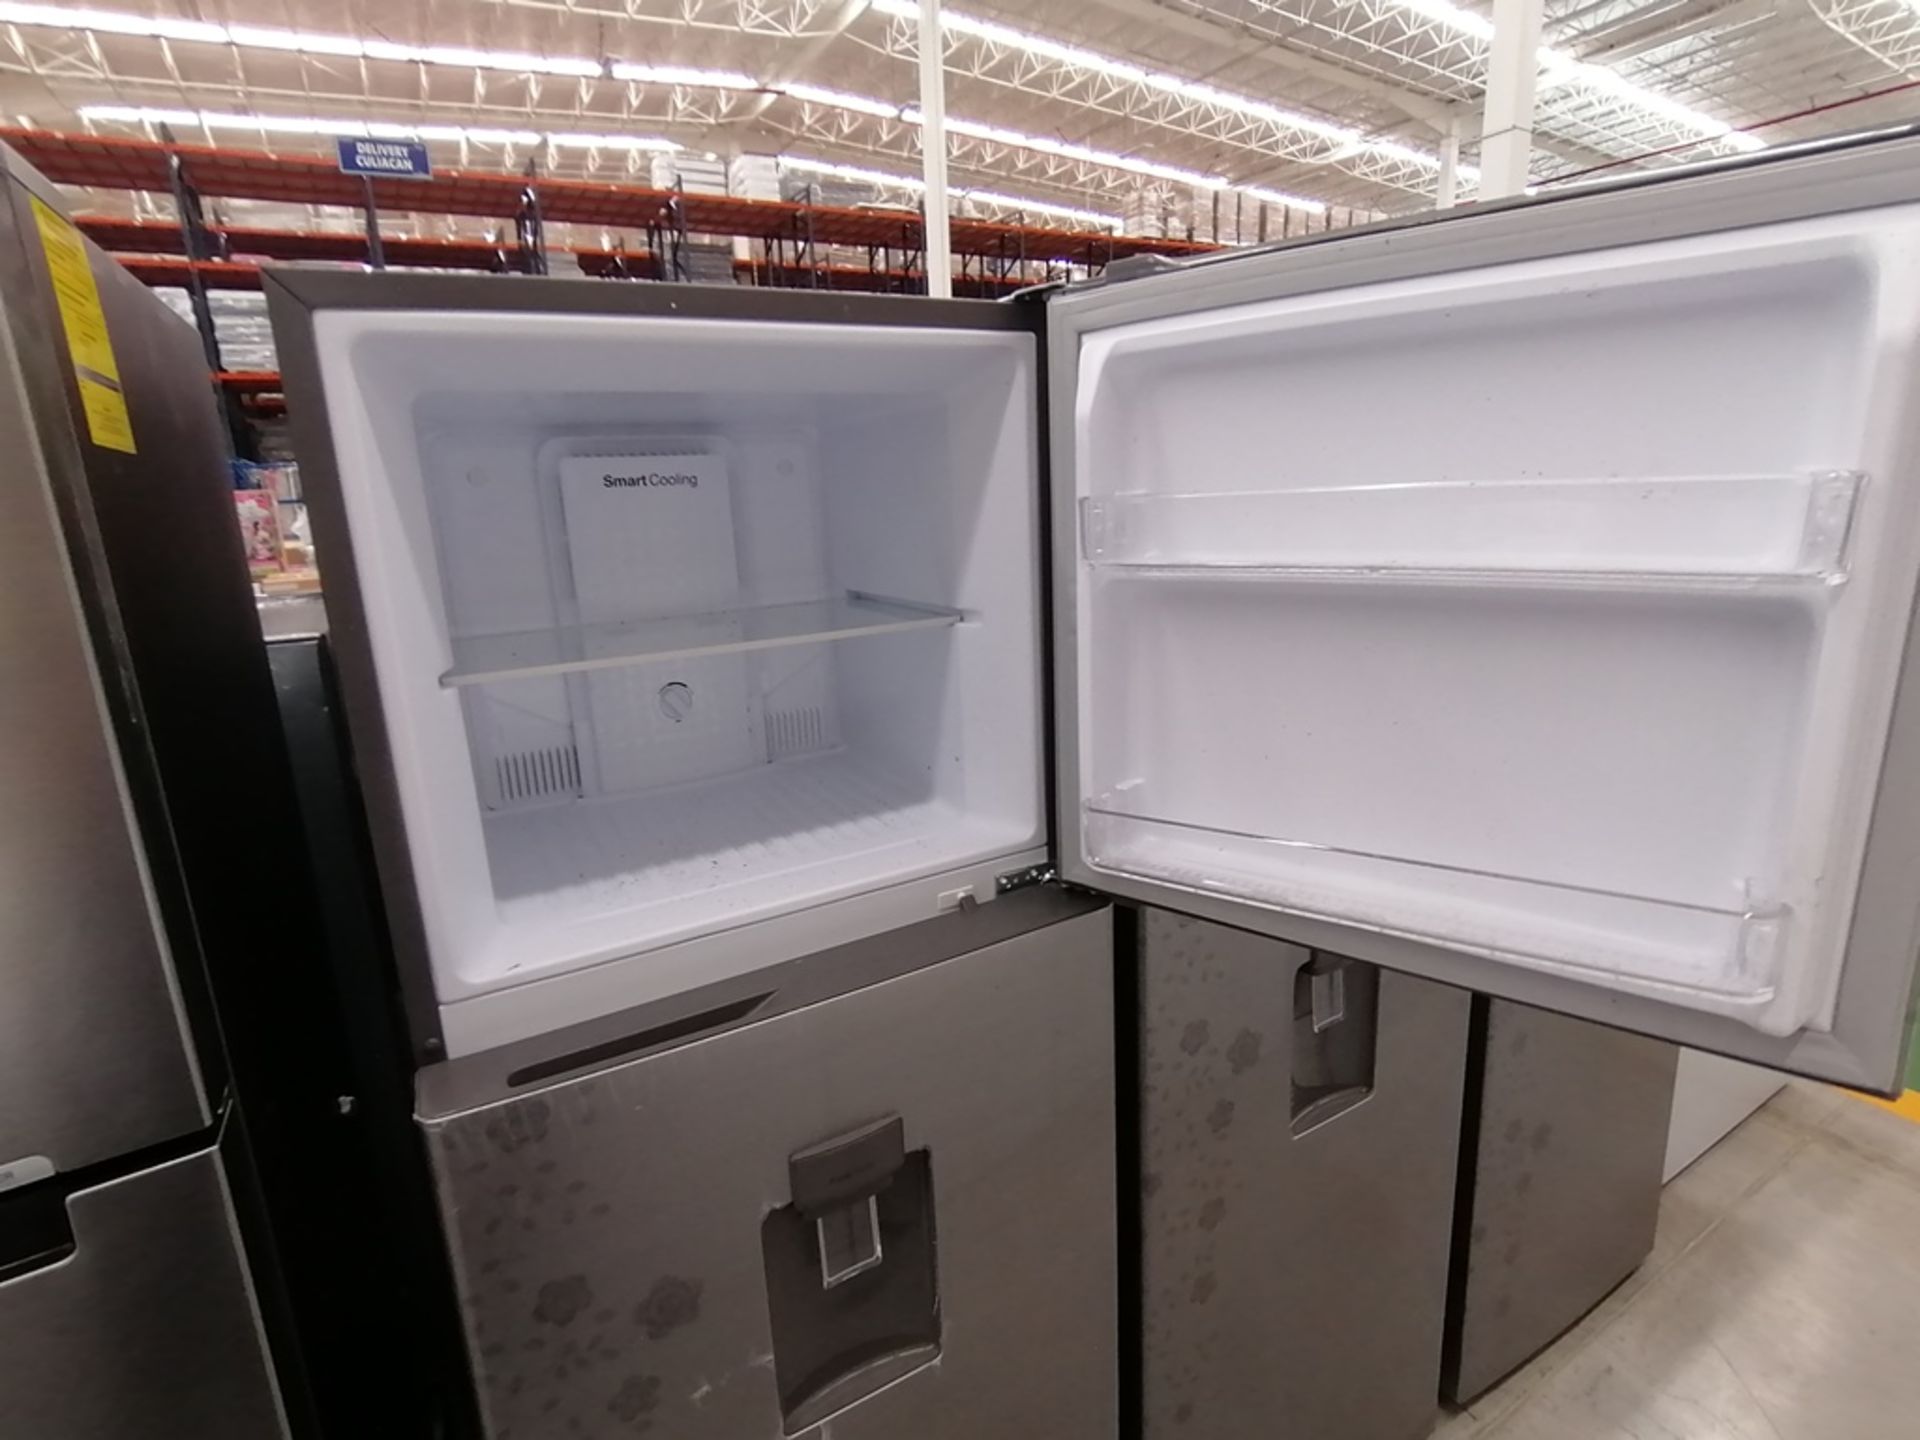 Lote de 2 refrigeradores incluye: 1 Refrigerador con dispensador de agua, Marca Winia, Modelo DFR40 - Image 11 of 15